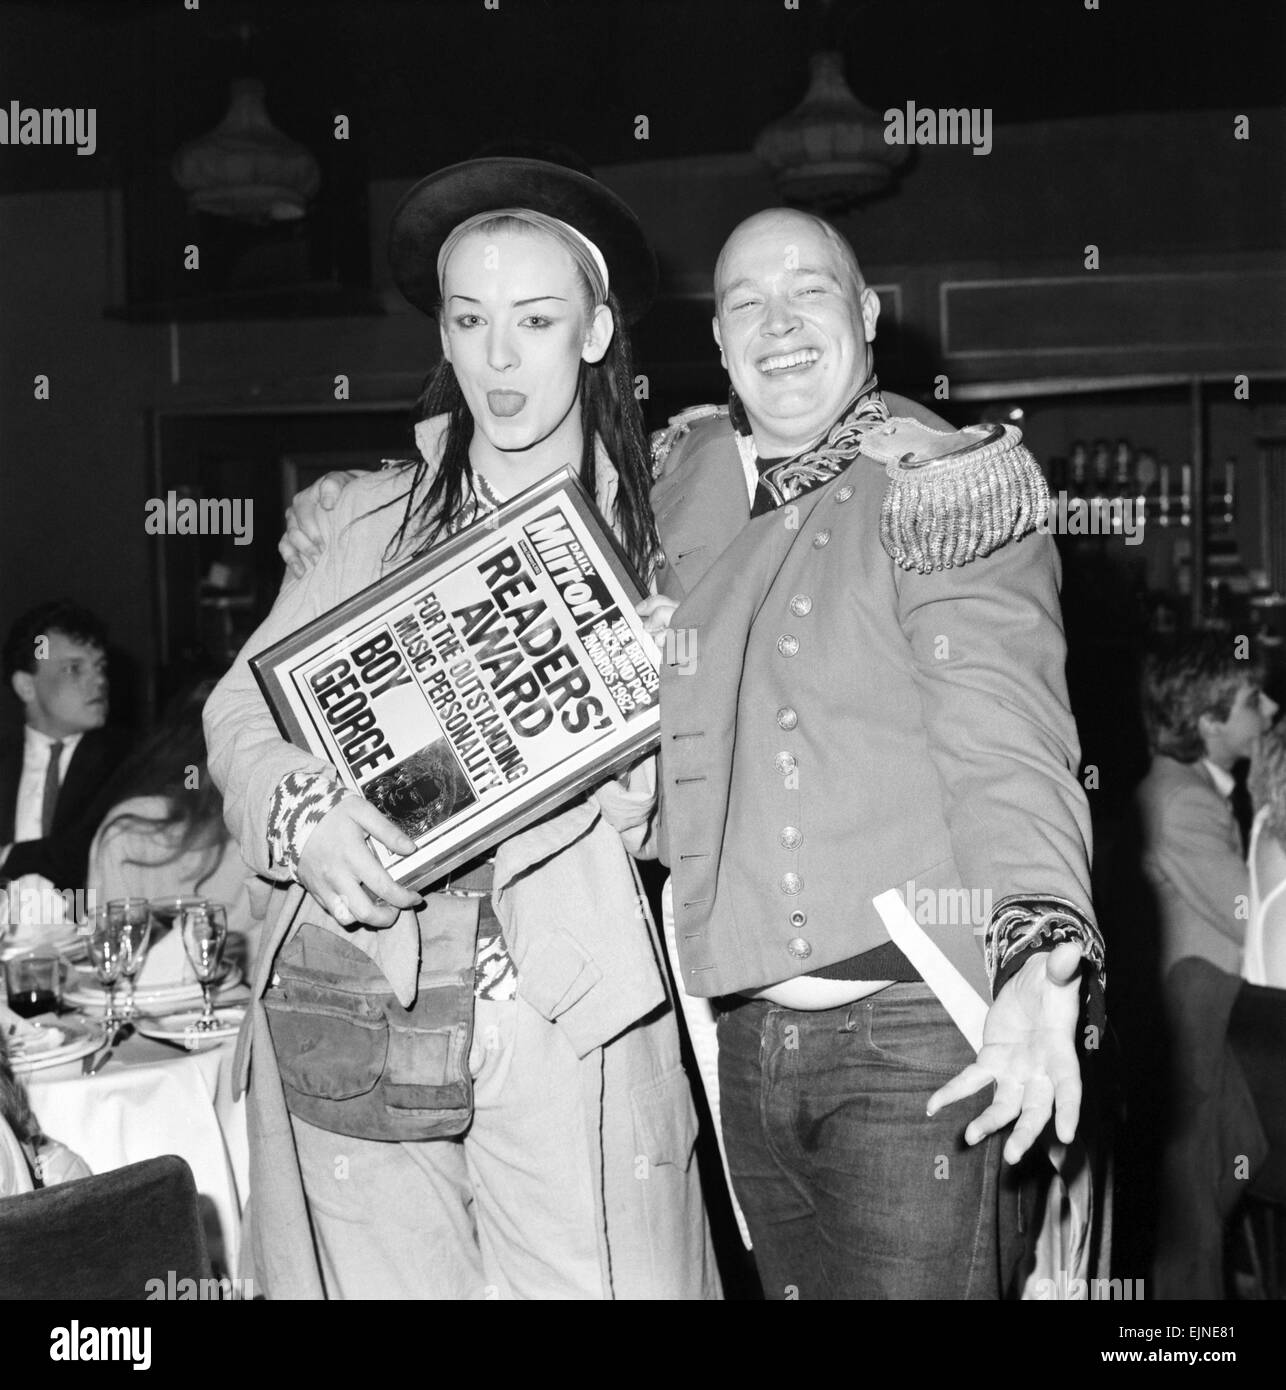 Britischer Rock und Pop Preis im Londoner Lyceum Ballroom. Sänger der Gruppe Kultur Club Boy George feiert nach dem Sieg der Daily Mirror Leser Award für herausragende Musik-Persönlichkeit. 9. Februar 1983. Stockfoto